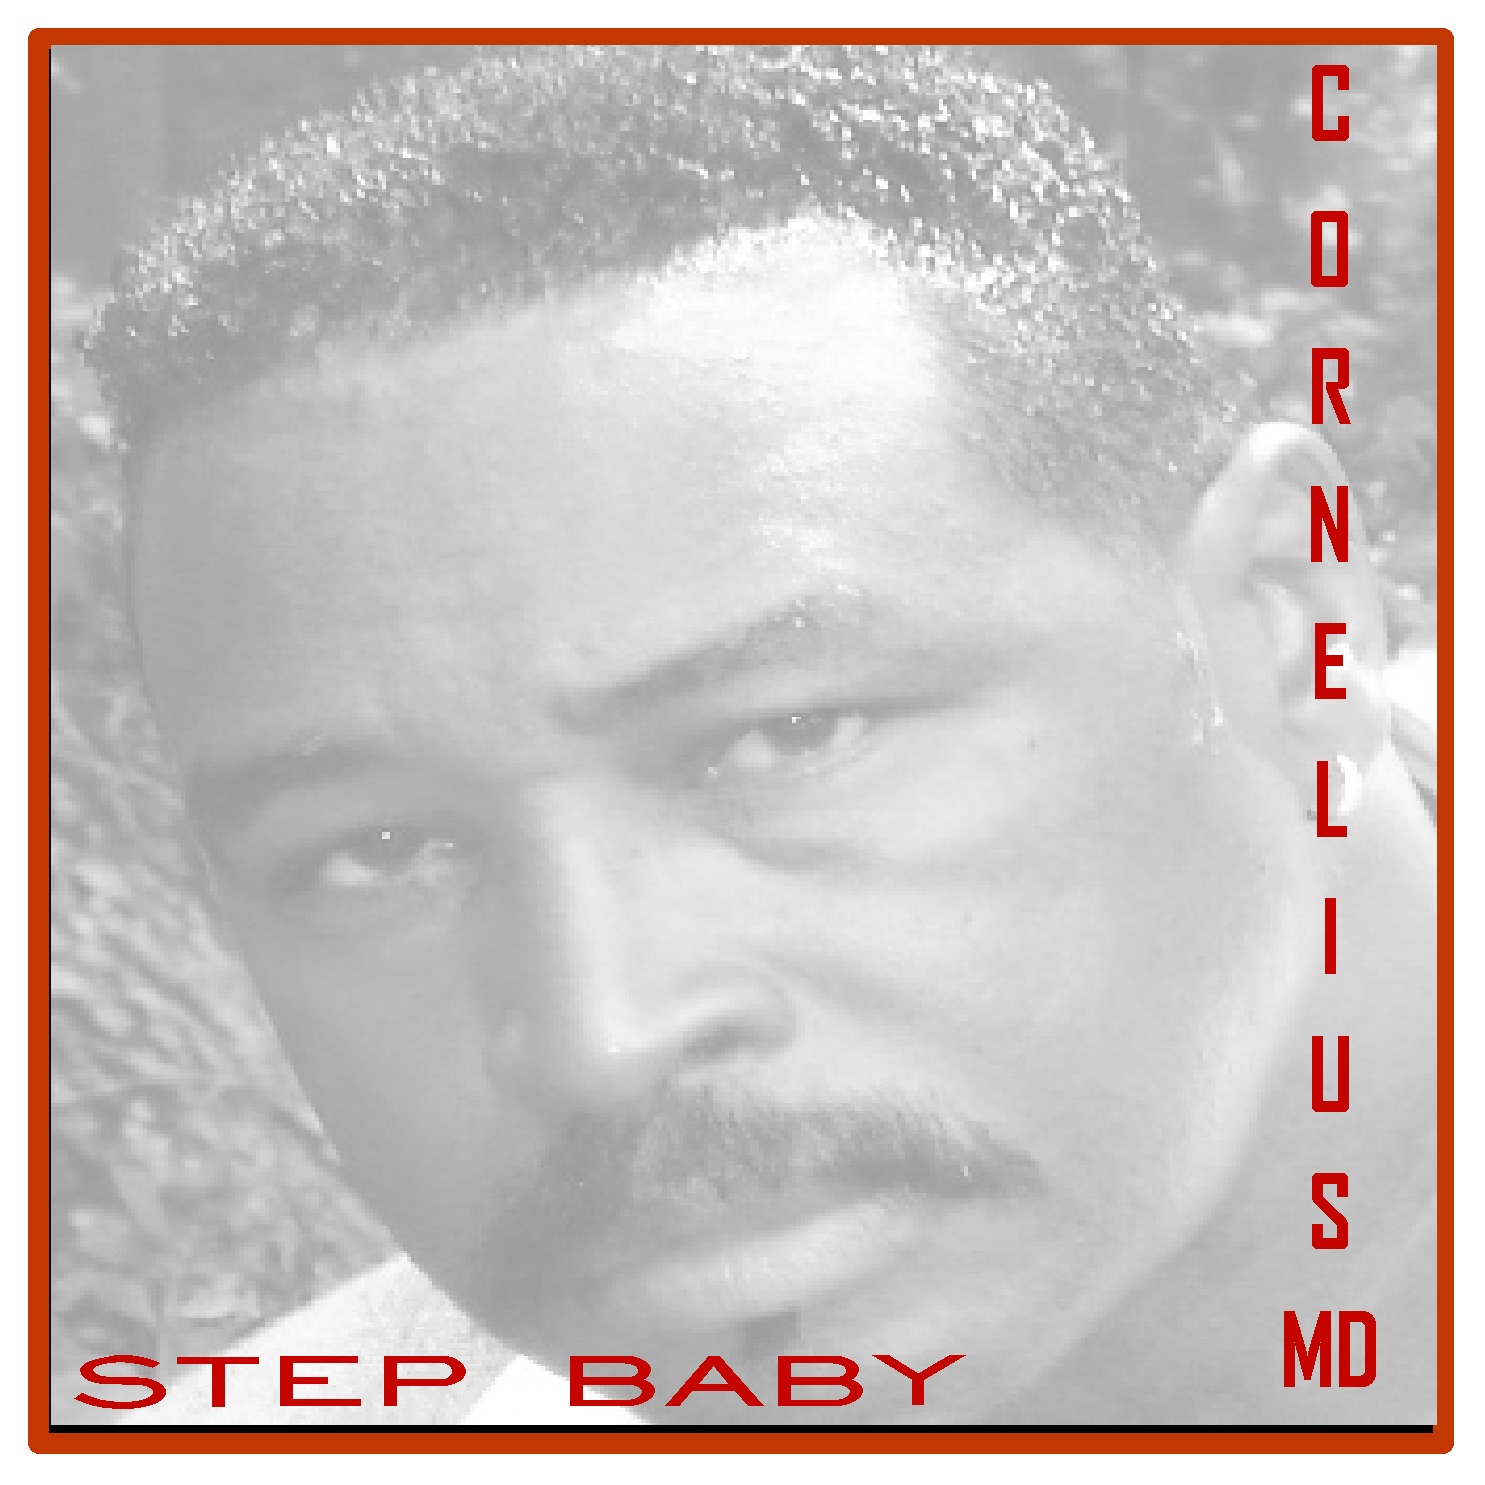 Cornelius MD - Step Baby